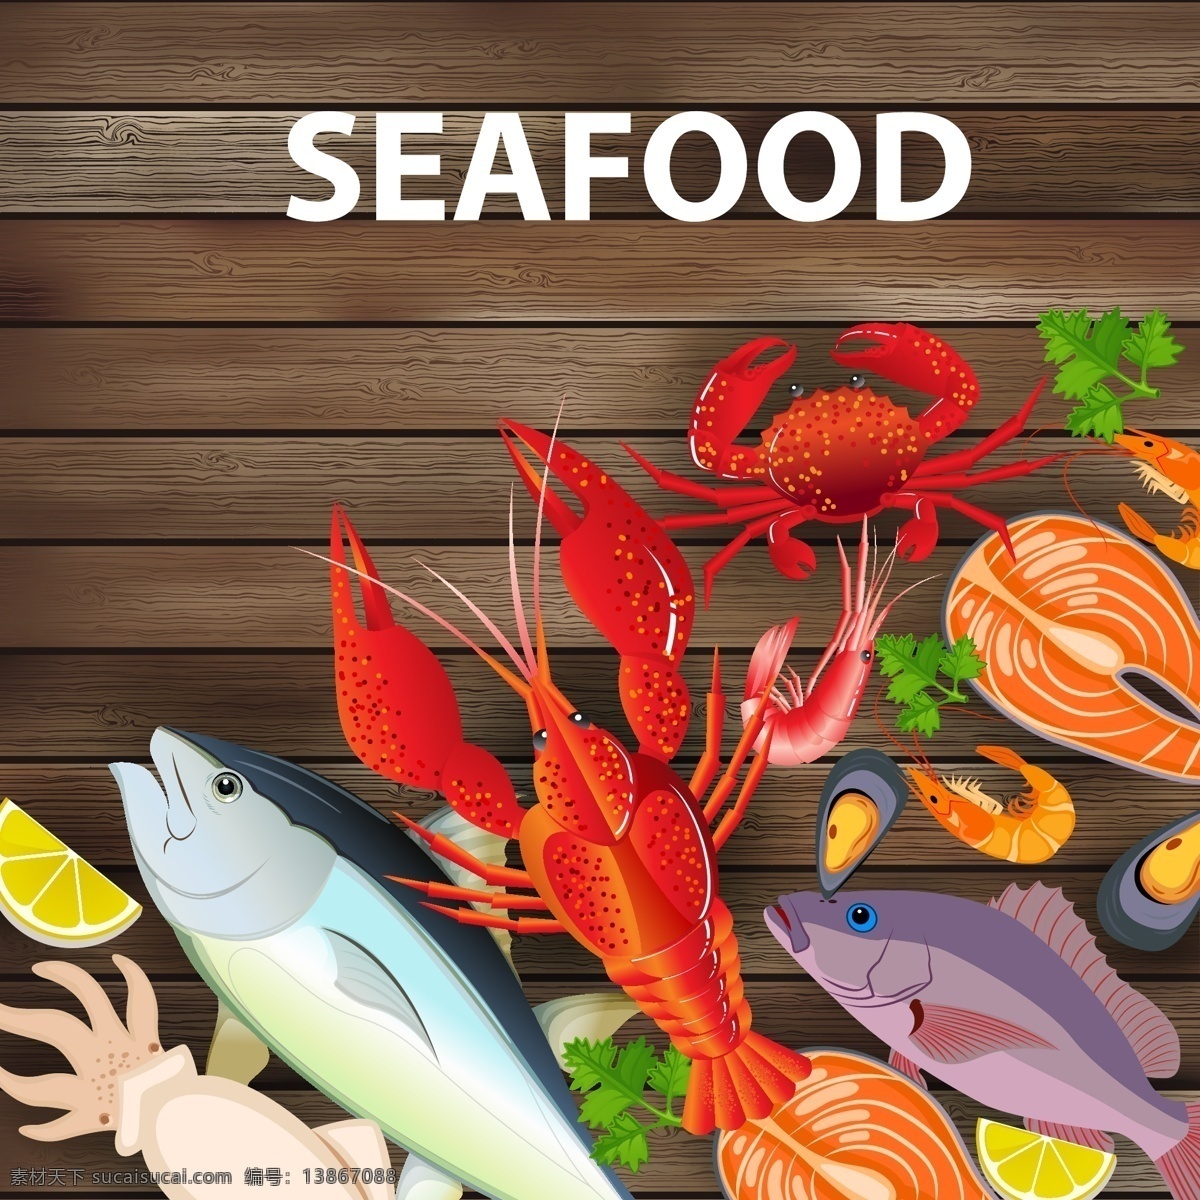 各种 彩色 海鲜 广告 图标 物种 装饰 矢量 龙虾 鱿鱼 鱼 虾 蟹 蚝 鱼肉 木板 木纹